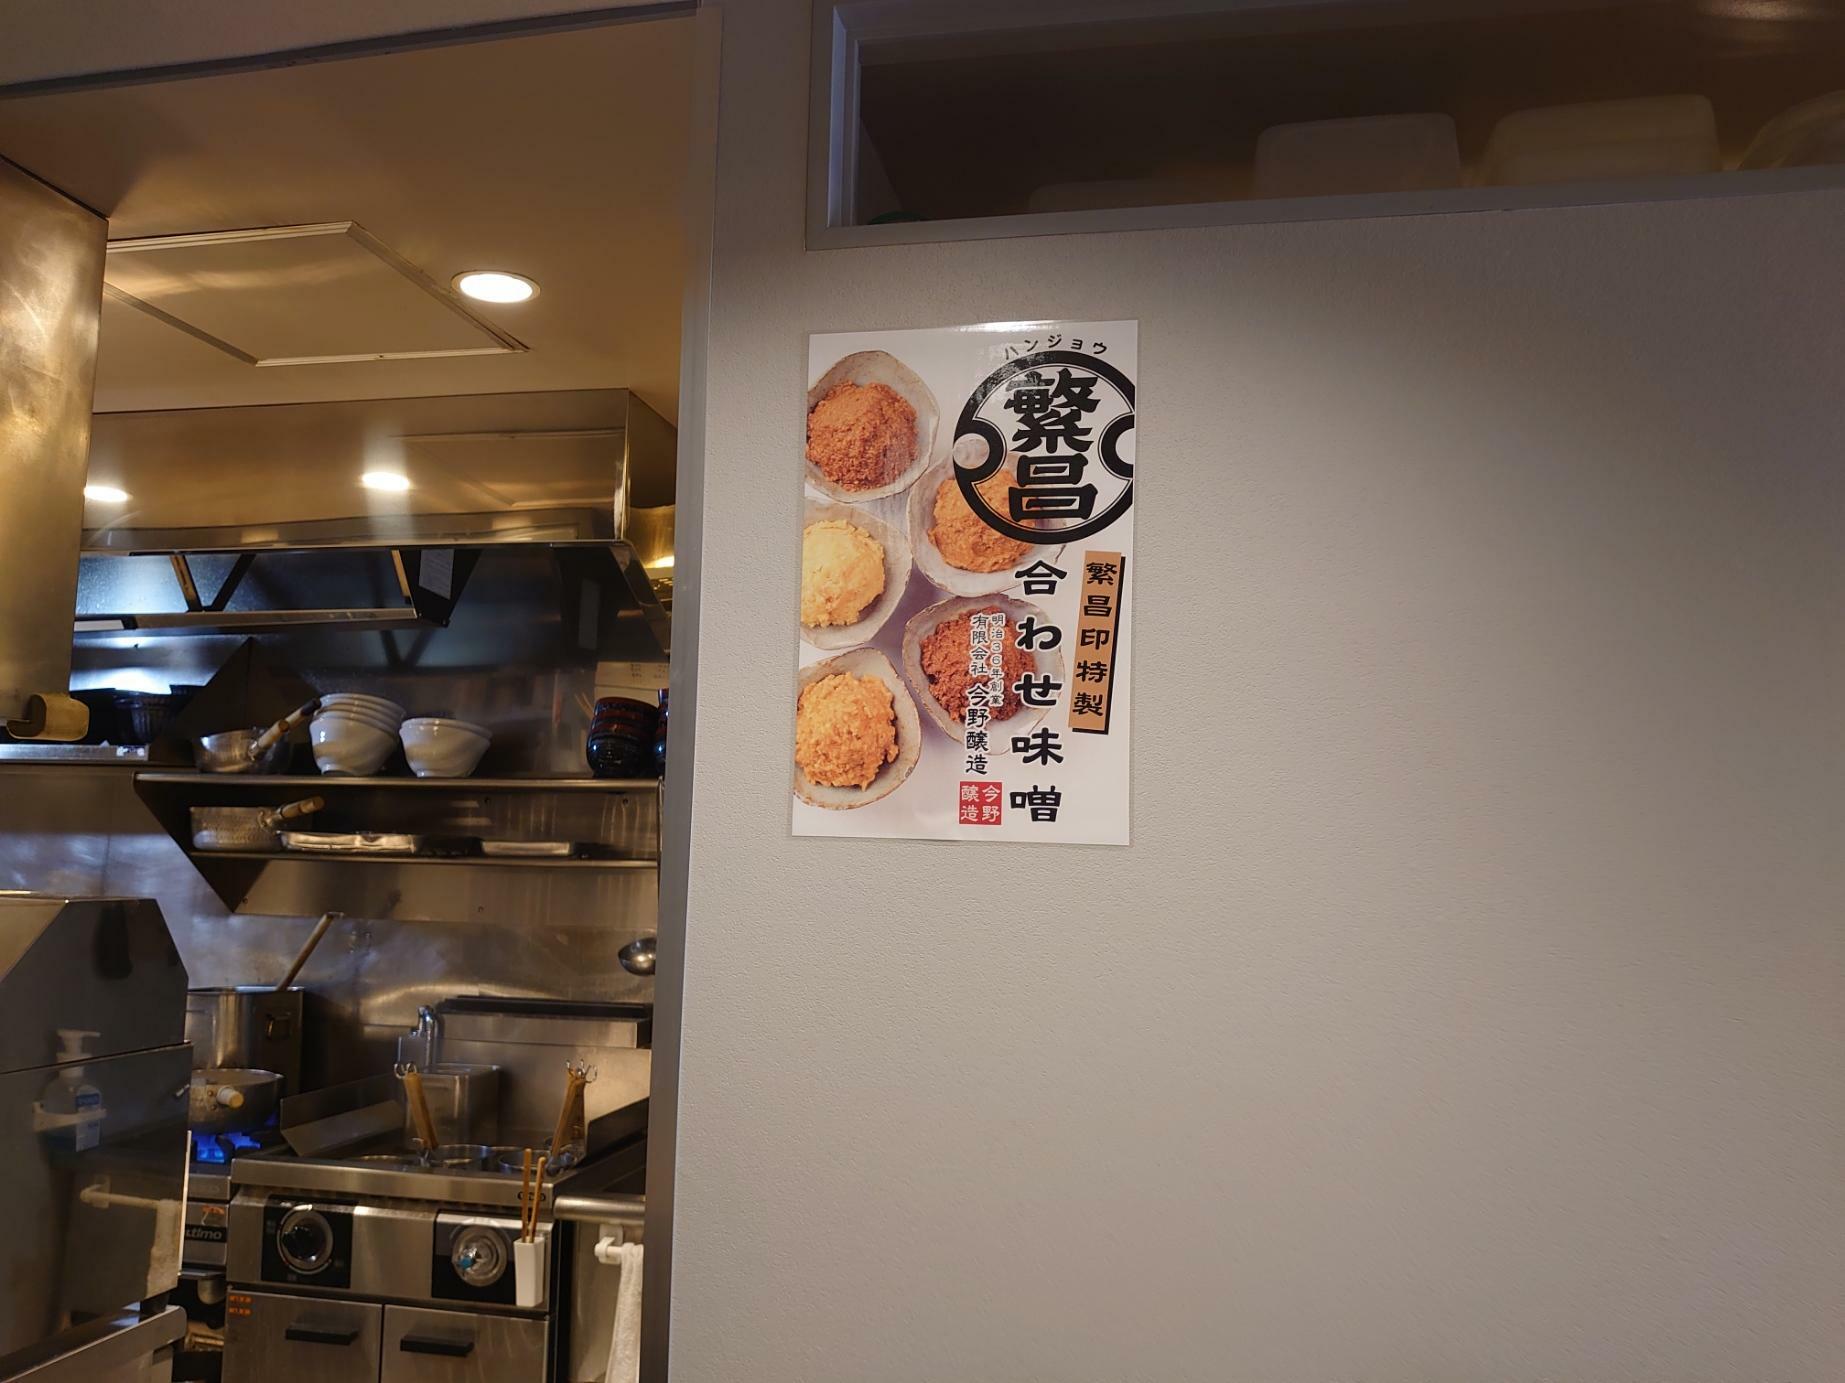 店内に貼られた味噌のポスター